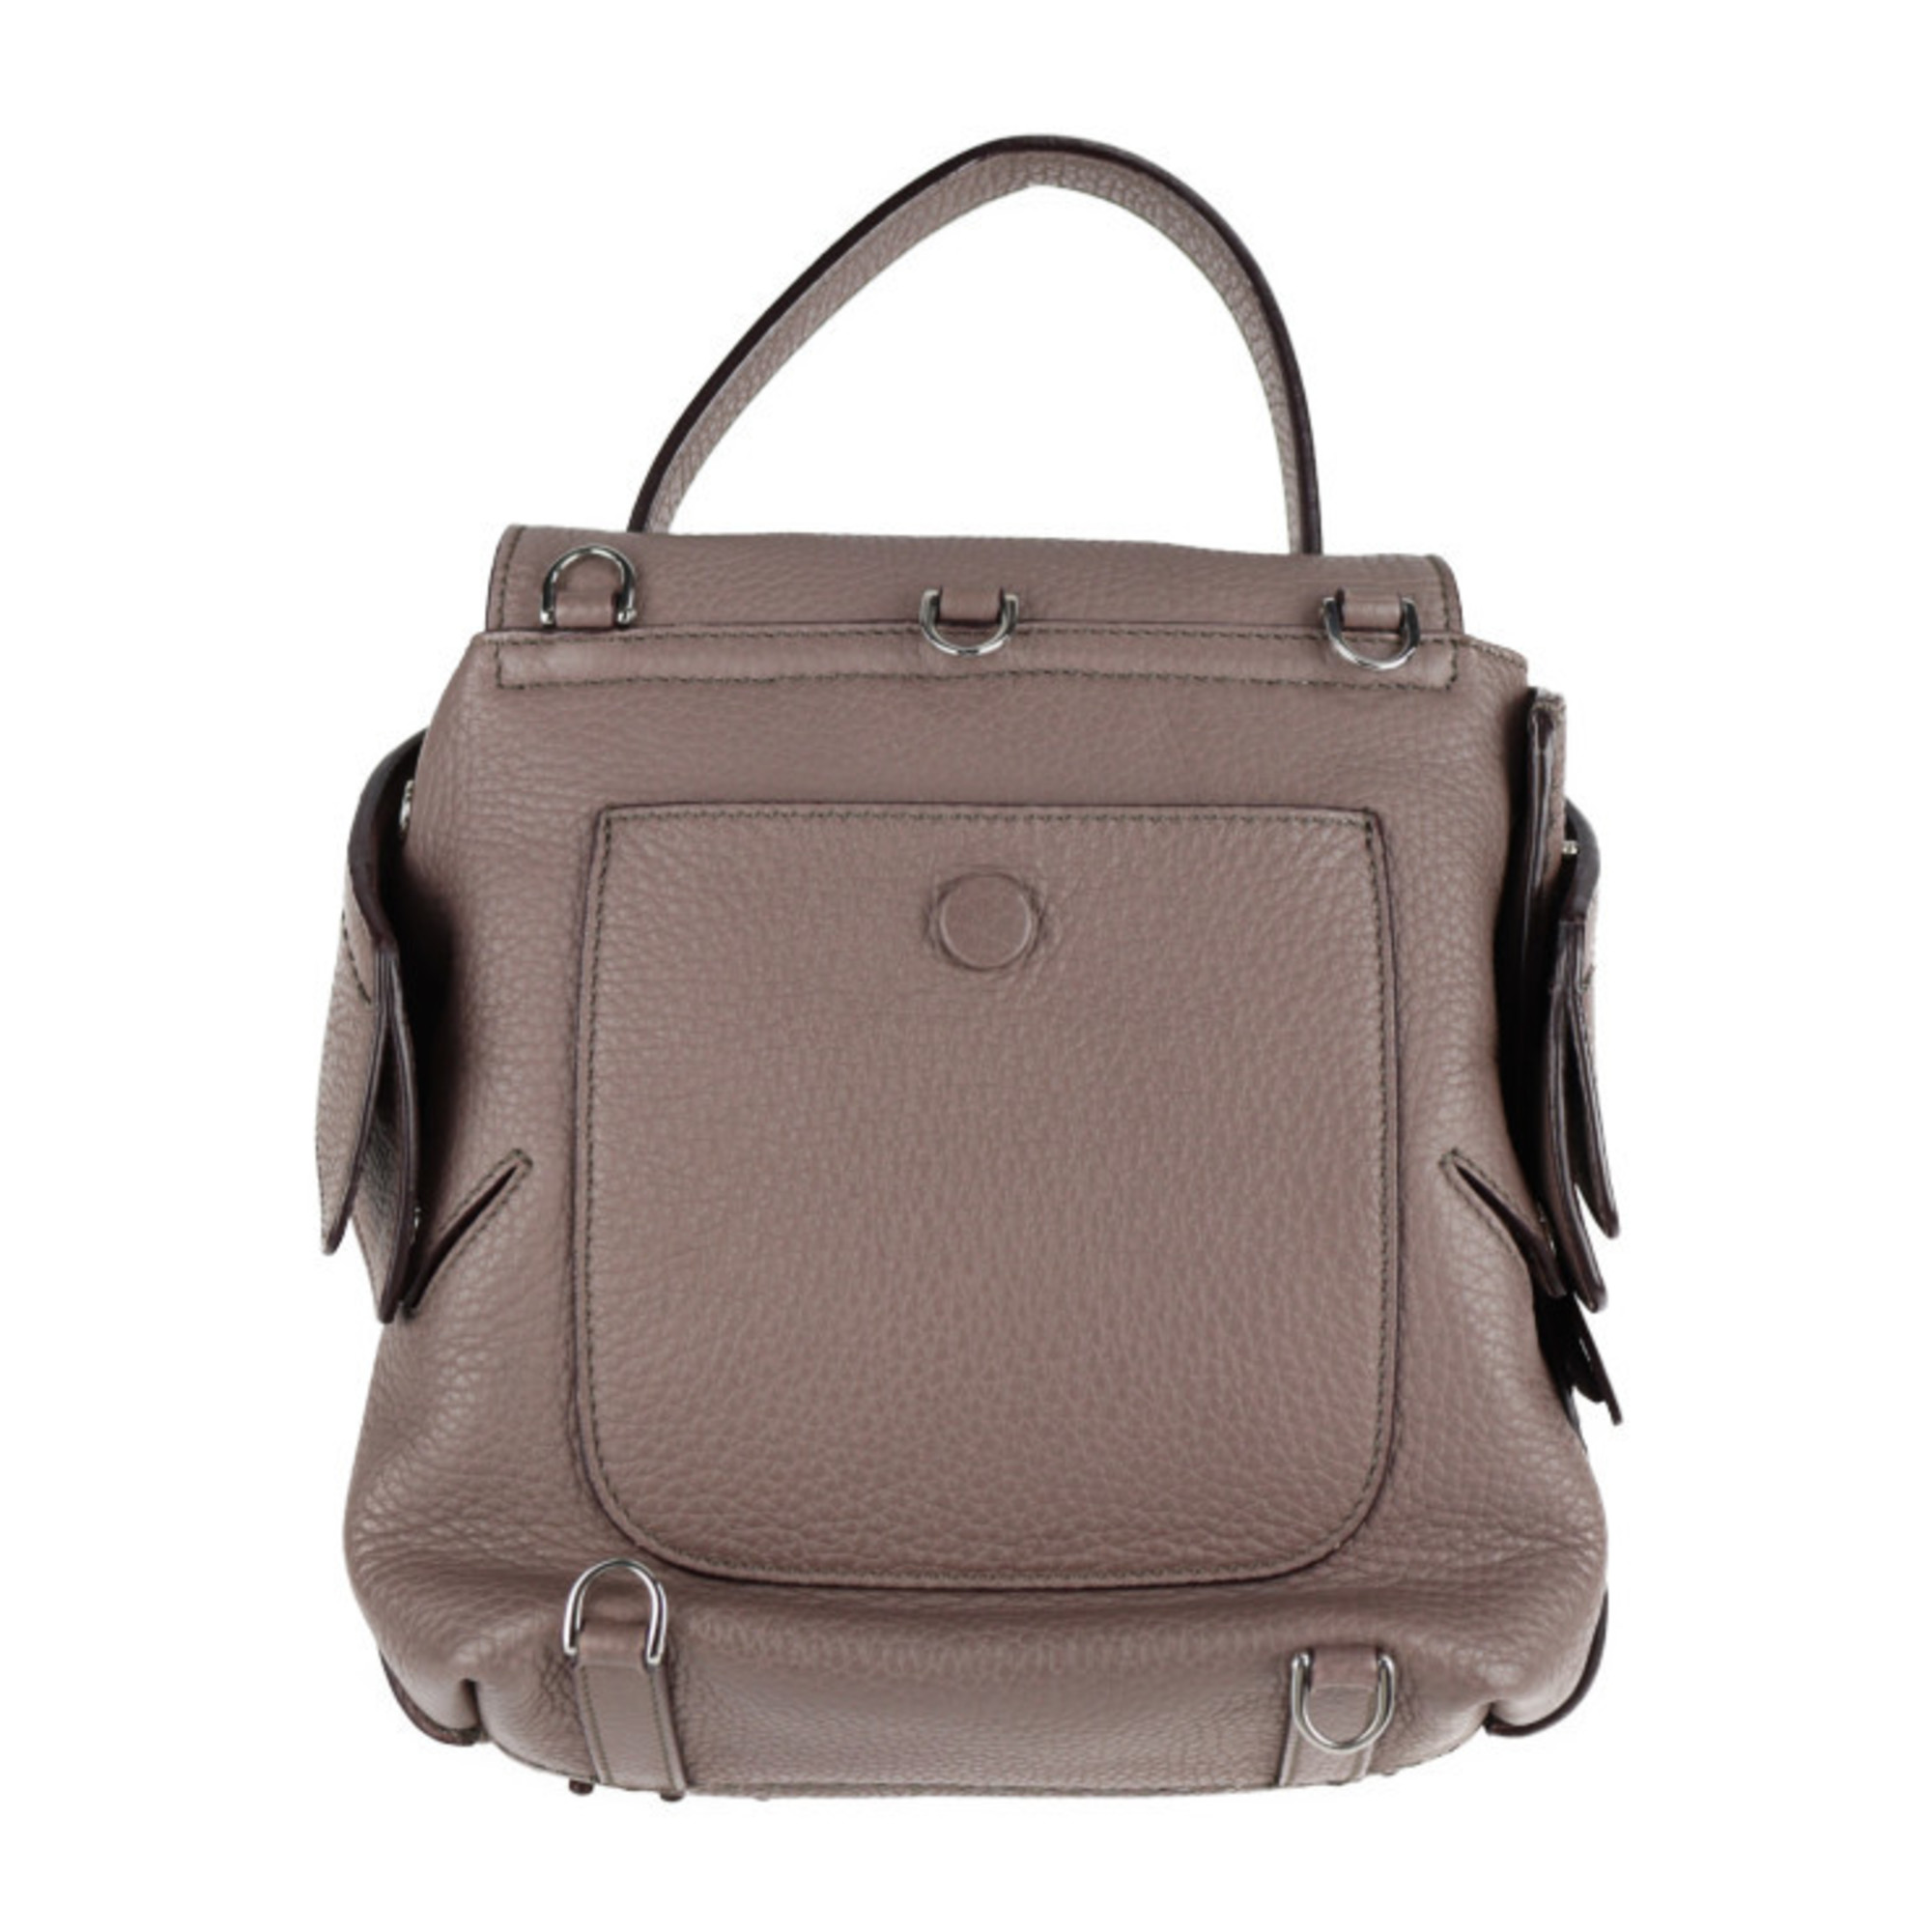 TOD'S Tod's Wave Line Backpack/Daypack Leather Purple Gray 3WAY Mini Backpack Shoulder Bag Handbag